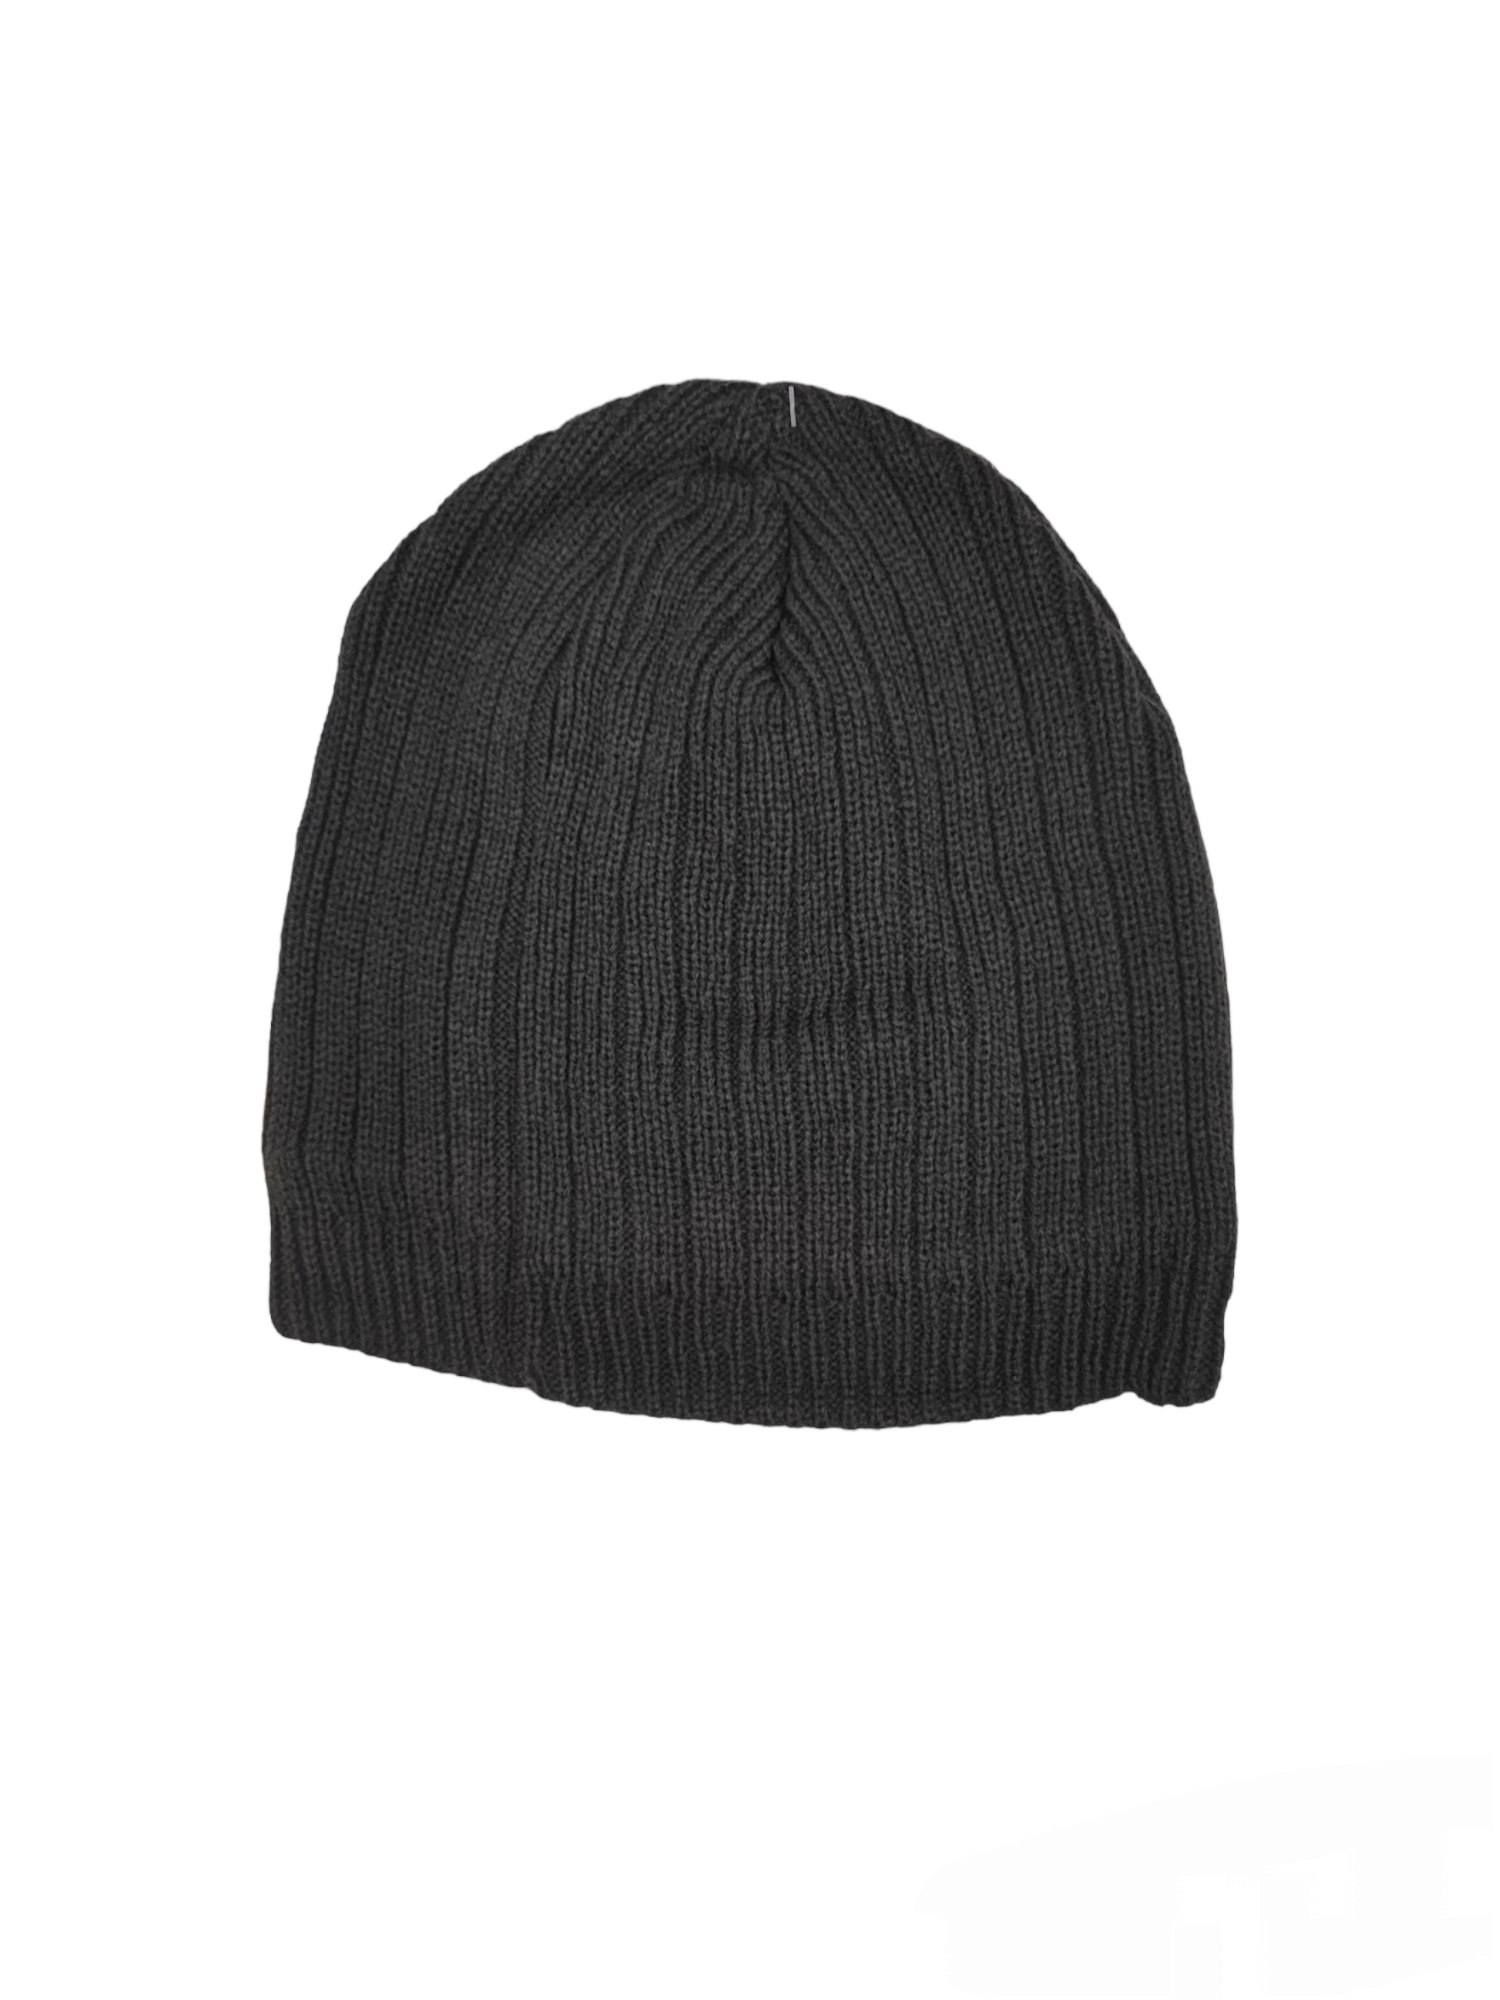 Men's fleece hat (x12)#6